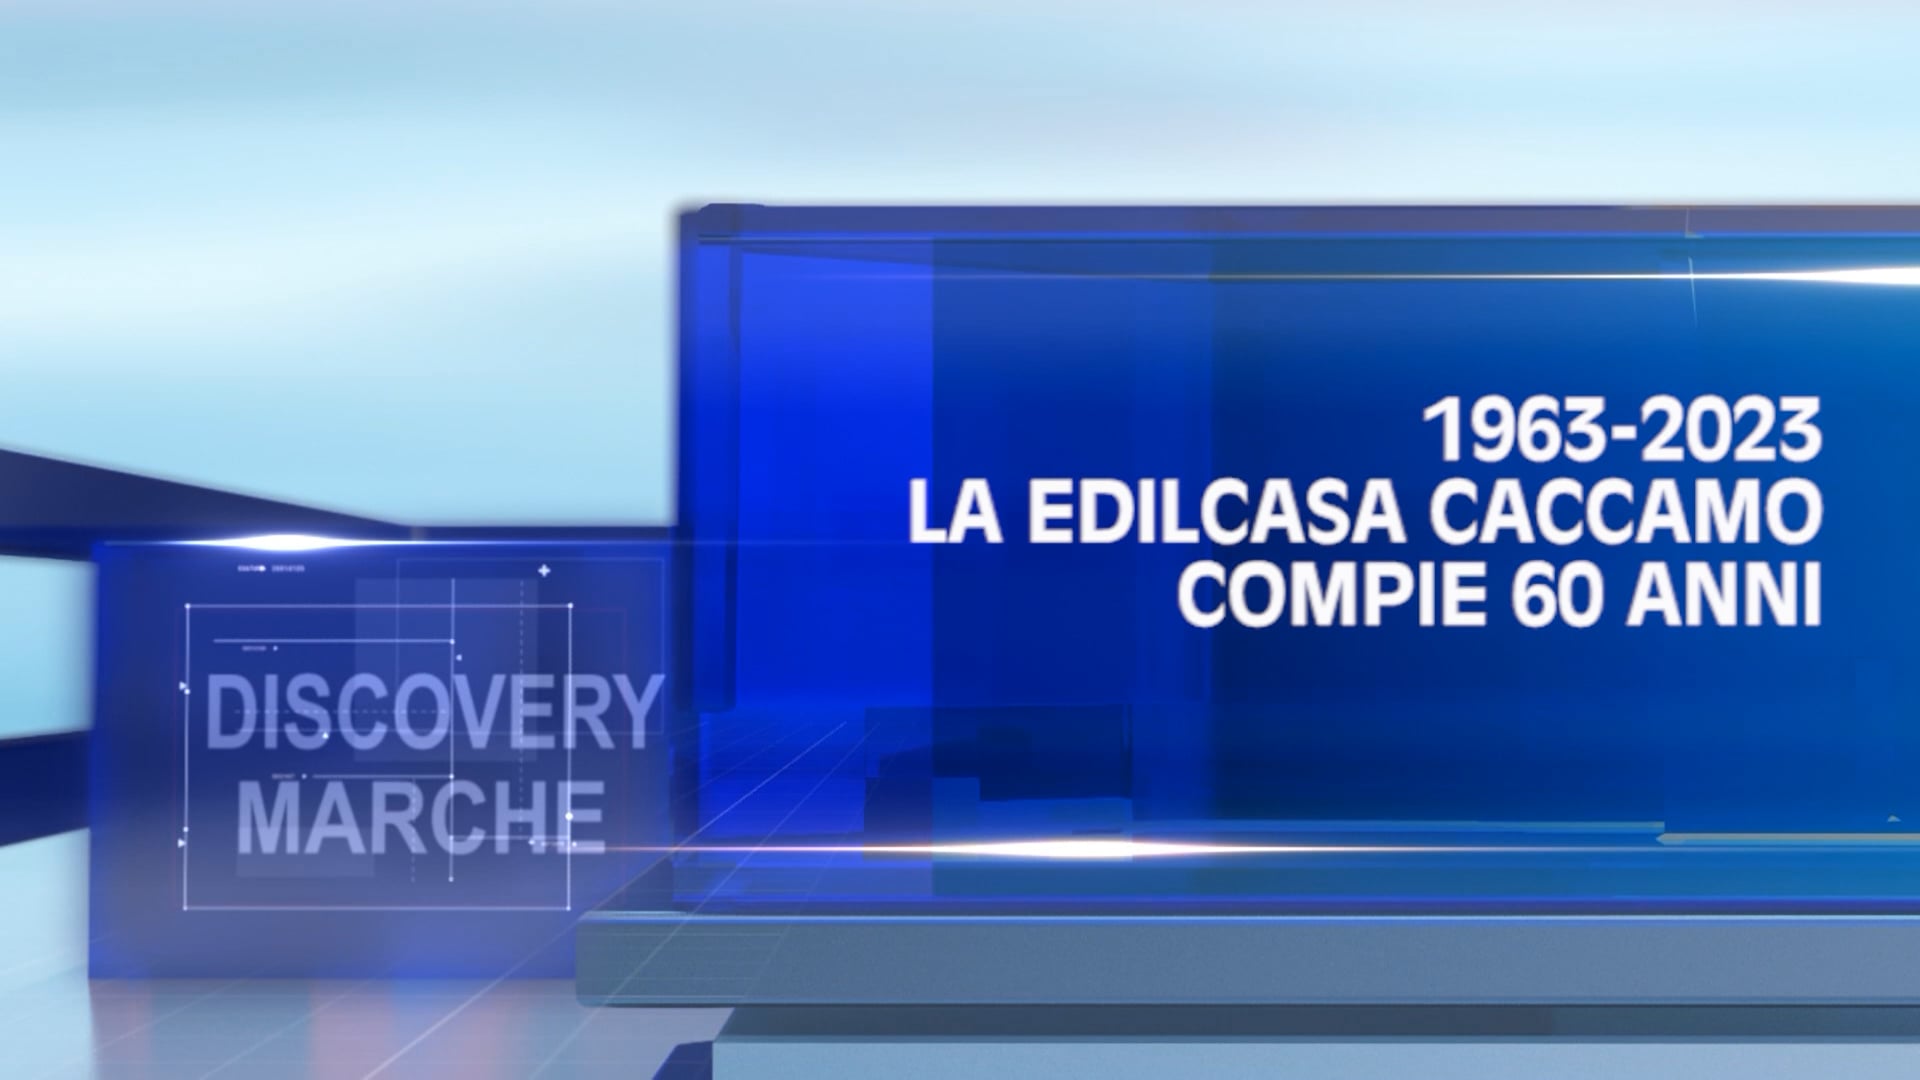 Discovery Marche - 1963-2023, la Edilcasa Caccamo compie 60 anni